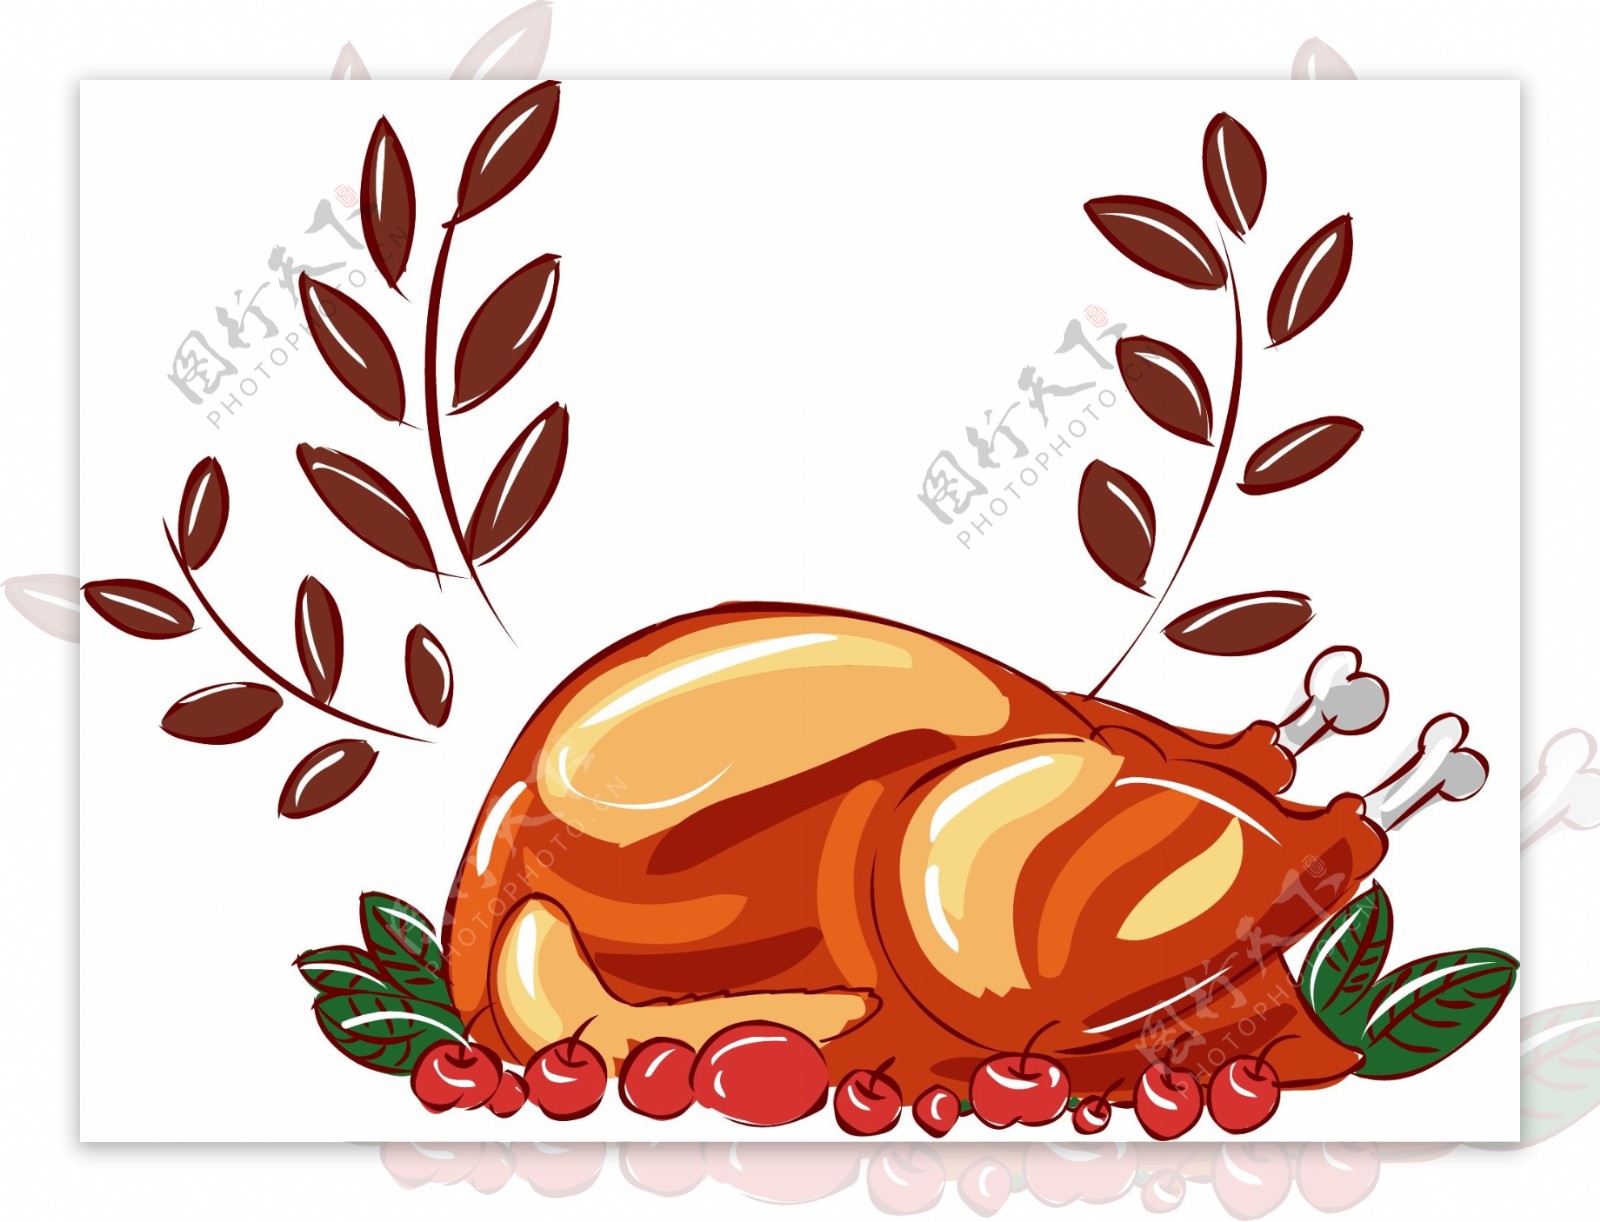 感恩节手绘美食卡通火鸡